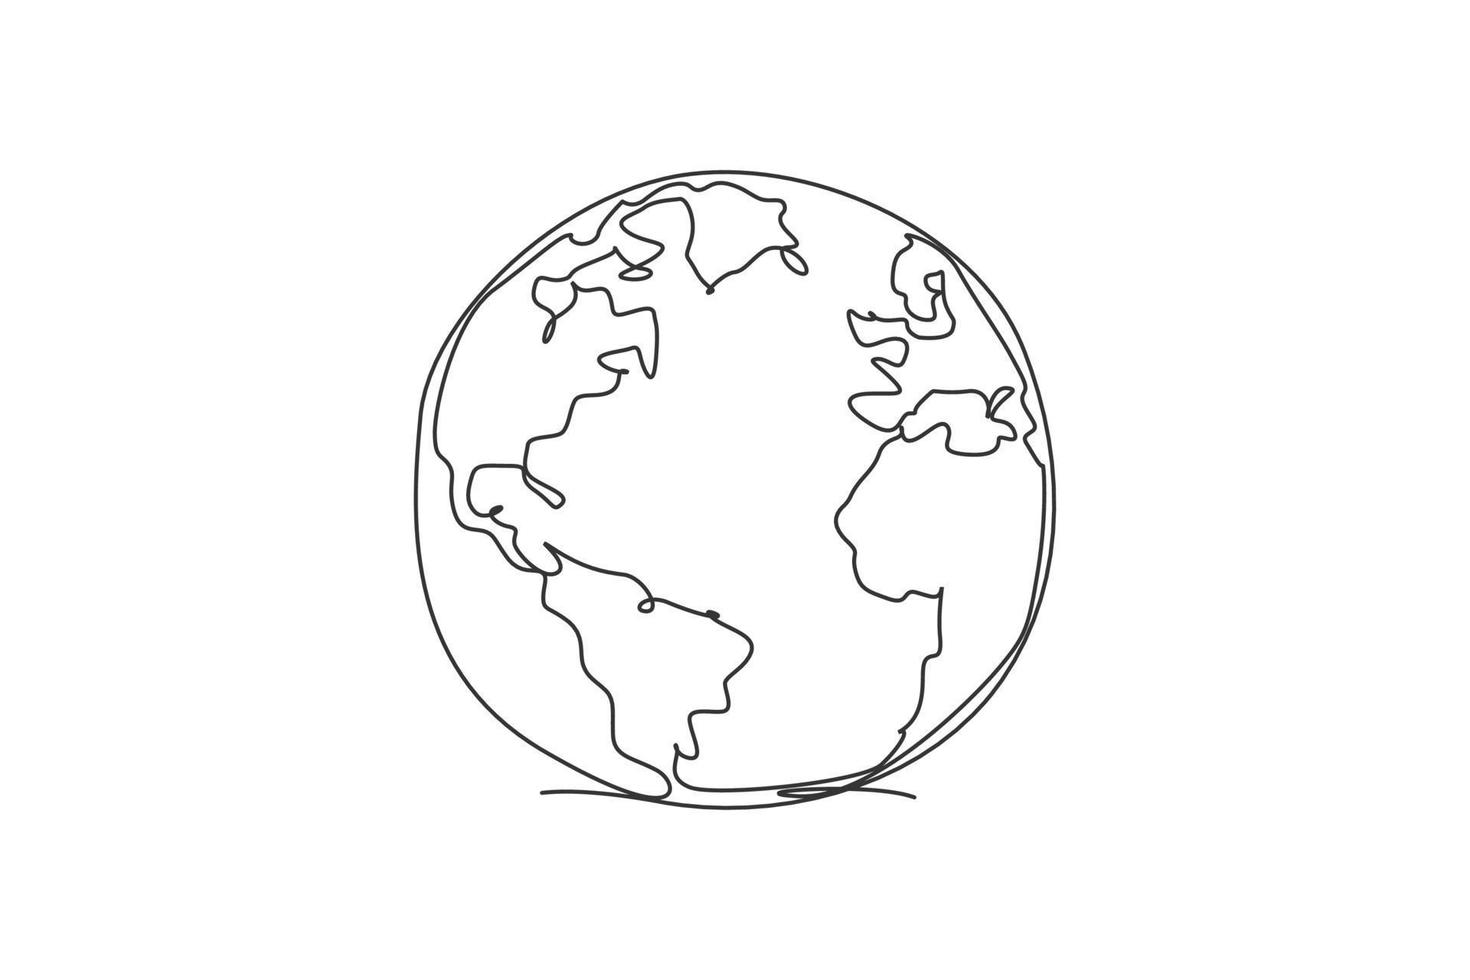 enkele een lijntekening van cirkel wereldkaart. wereldbol aarde pictogram silhouet voor onderwijs concept. infographics, aardrijkskunde presentatie geïsoleerd op een witte achtergrond. ontwerp vector grafische afbeelding